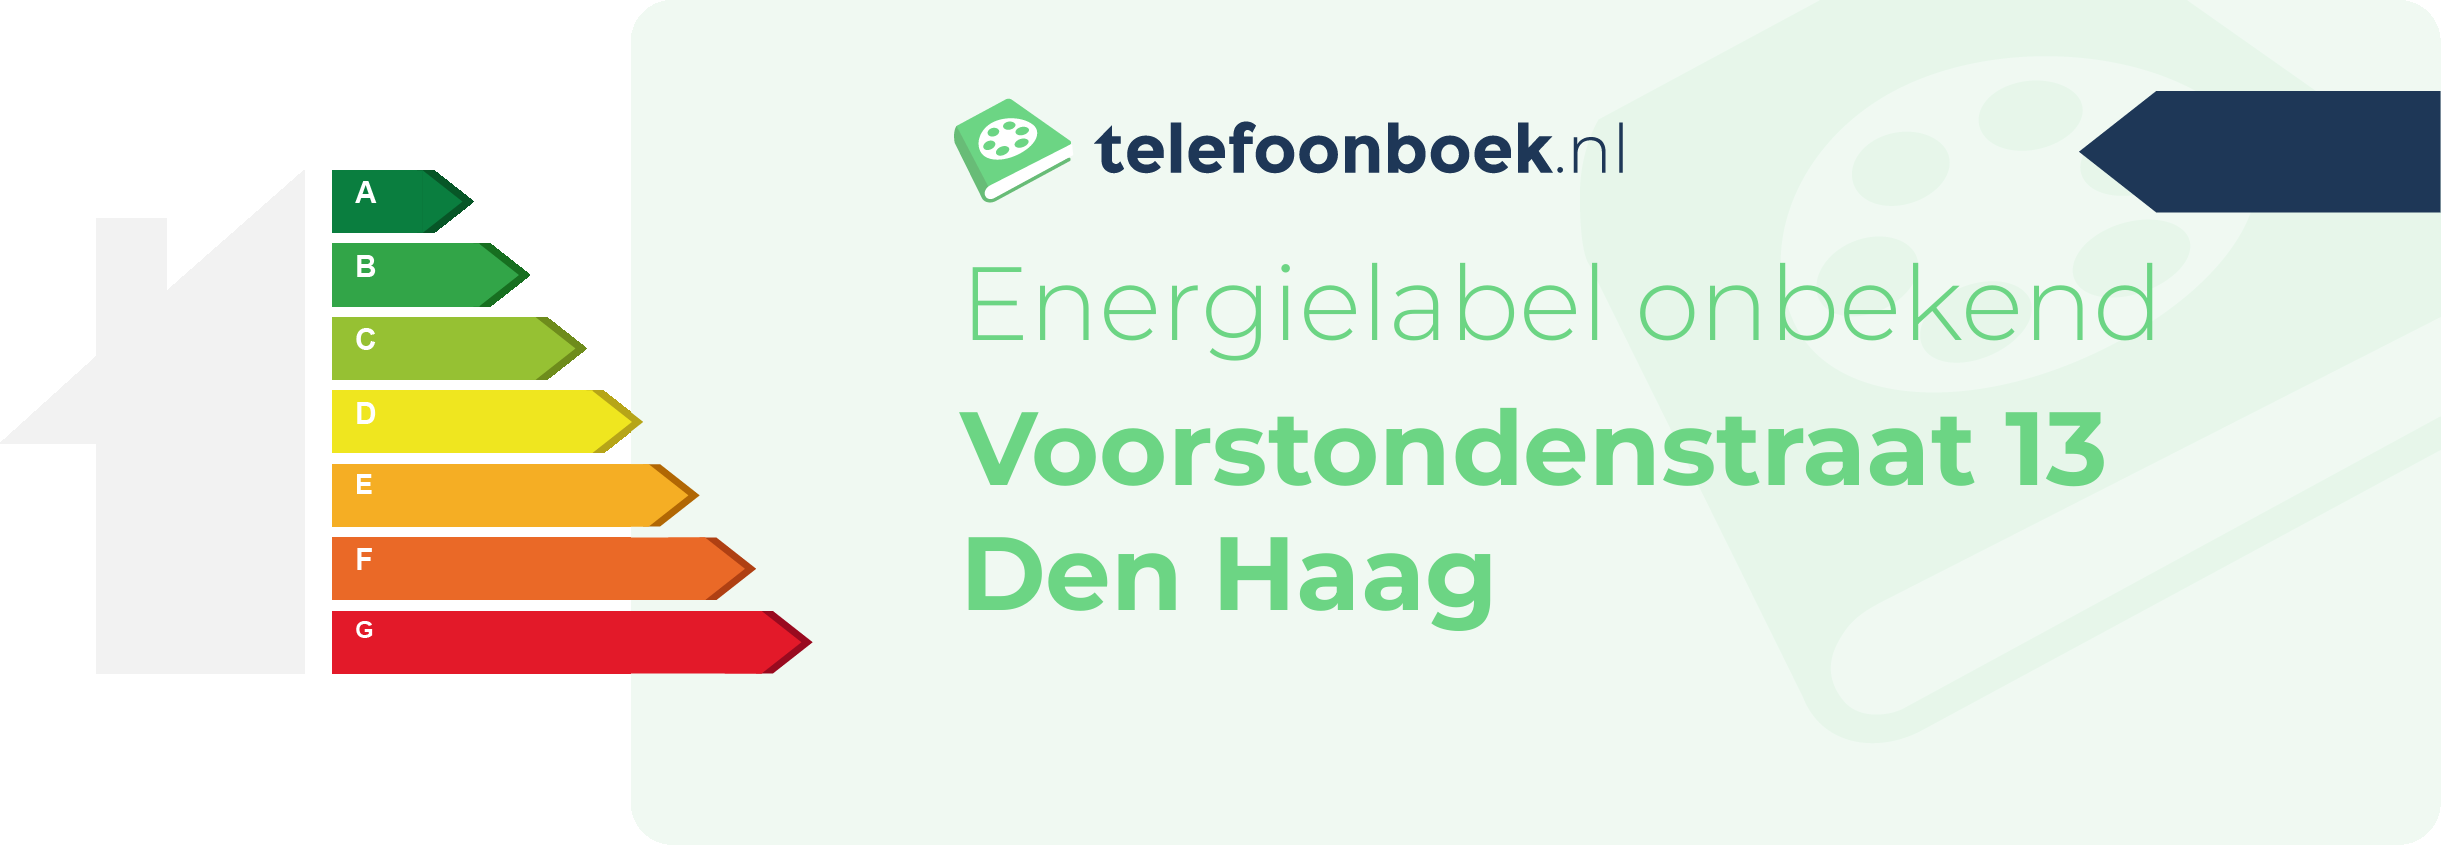 Energielabel Voorstondenstraat 13 Den Haag